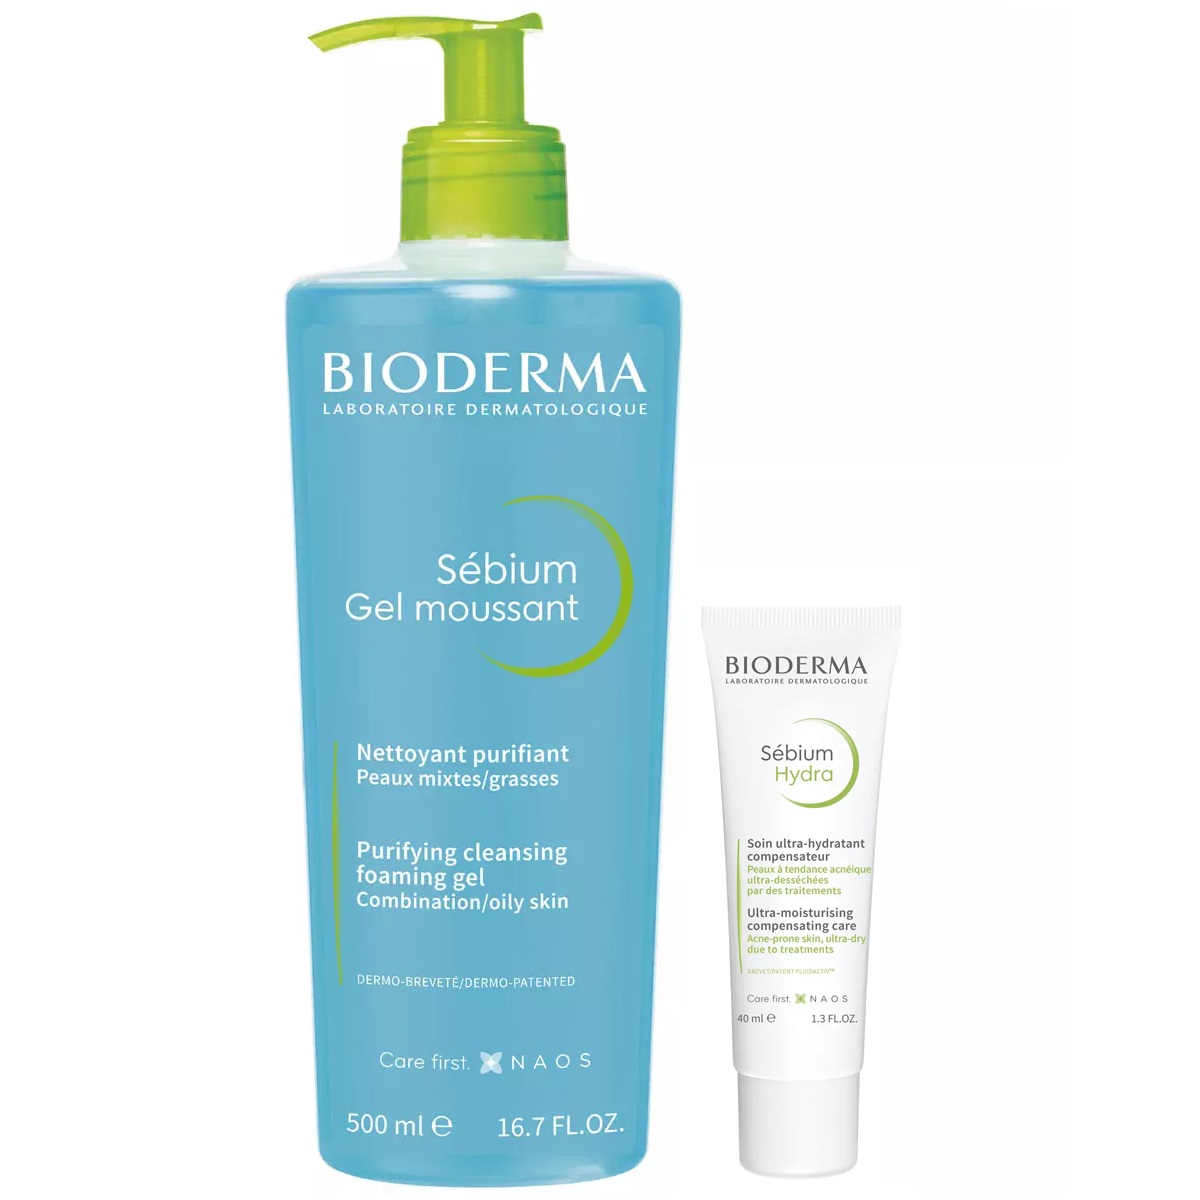 Bioderma Набор для увлажнения жирной кожи: крем, 40 мл + гель, 500 мл (Bioderma, Sebium)